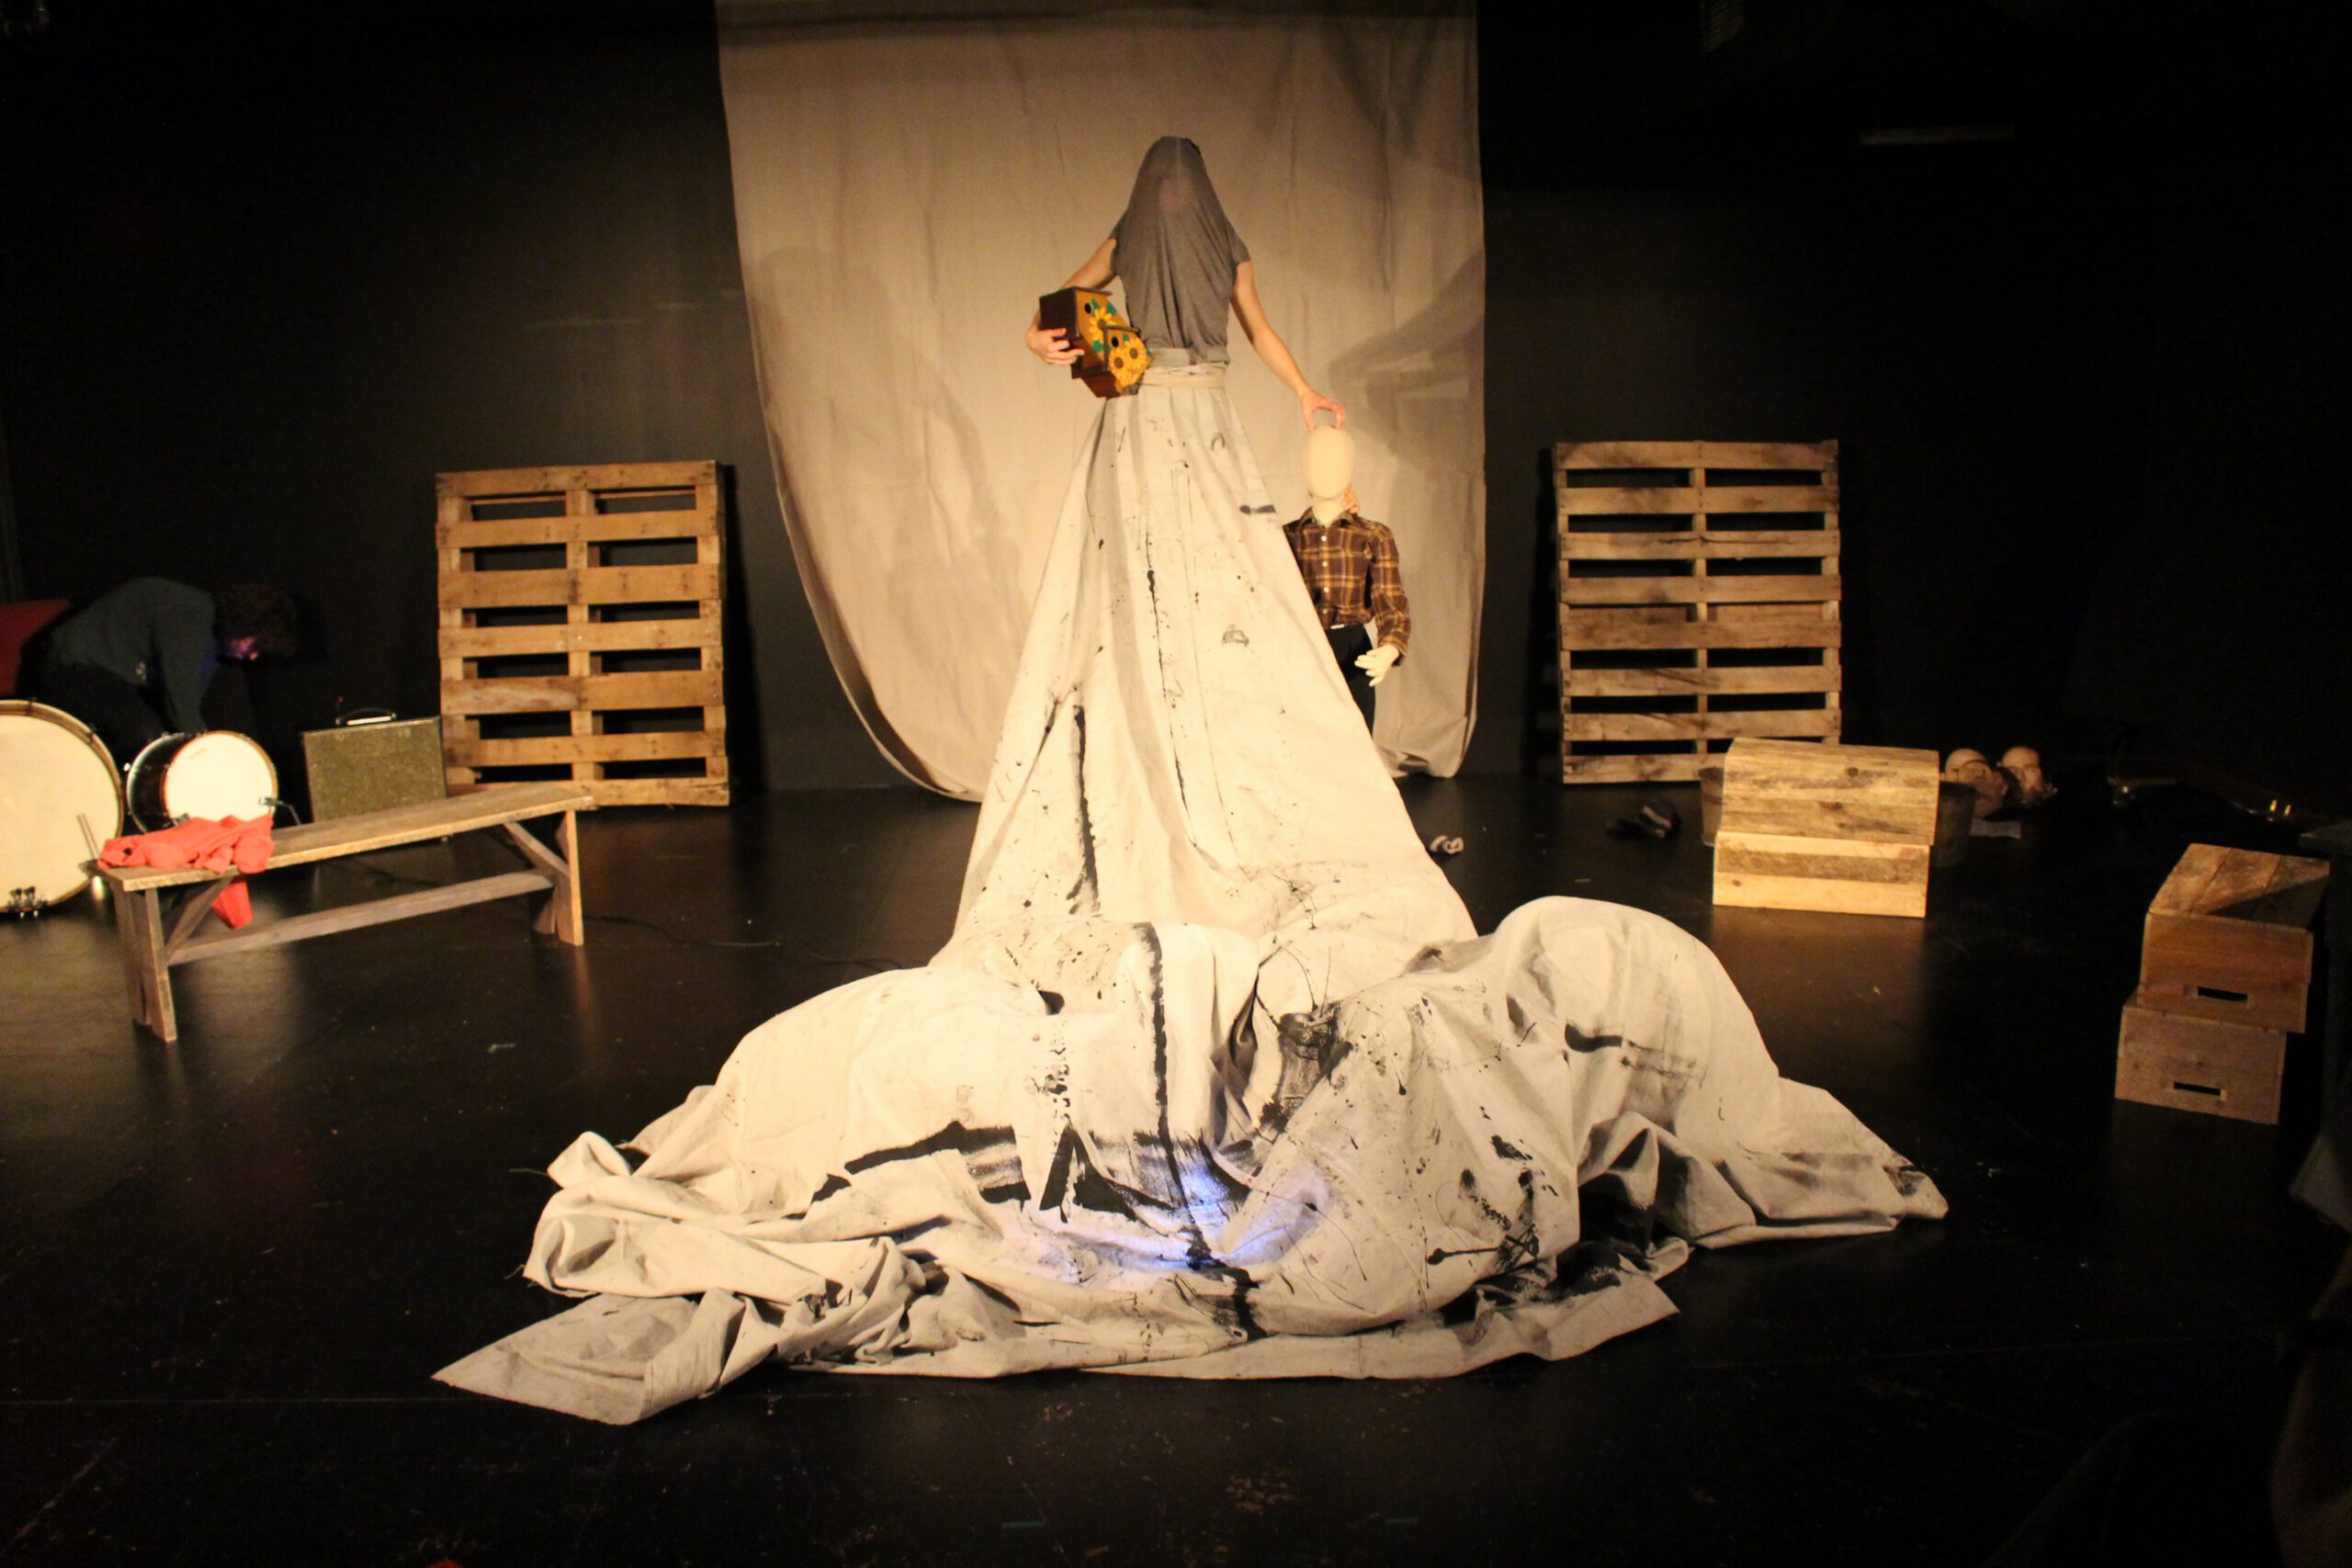 Zdjęcie scenografii; nienaturalnie wysoka sylwetka w sukni z płótna, drewniane skrzynki i palety